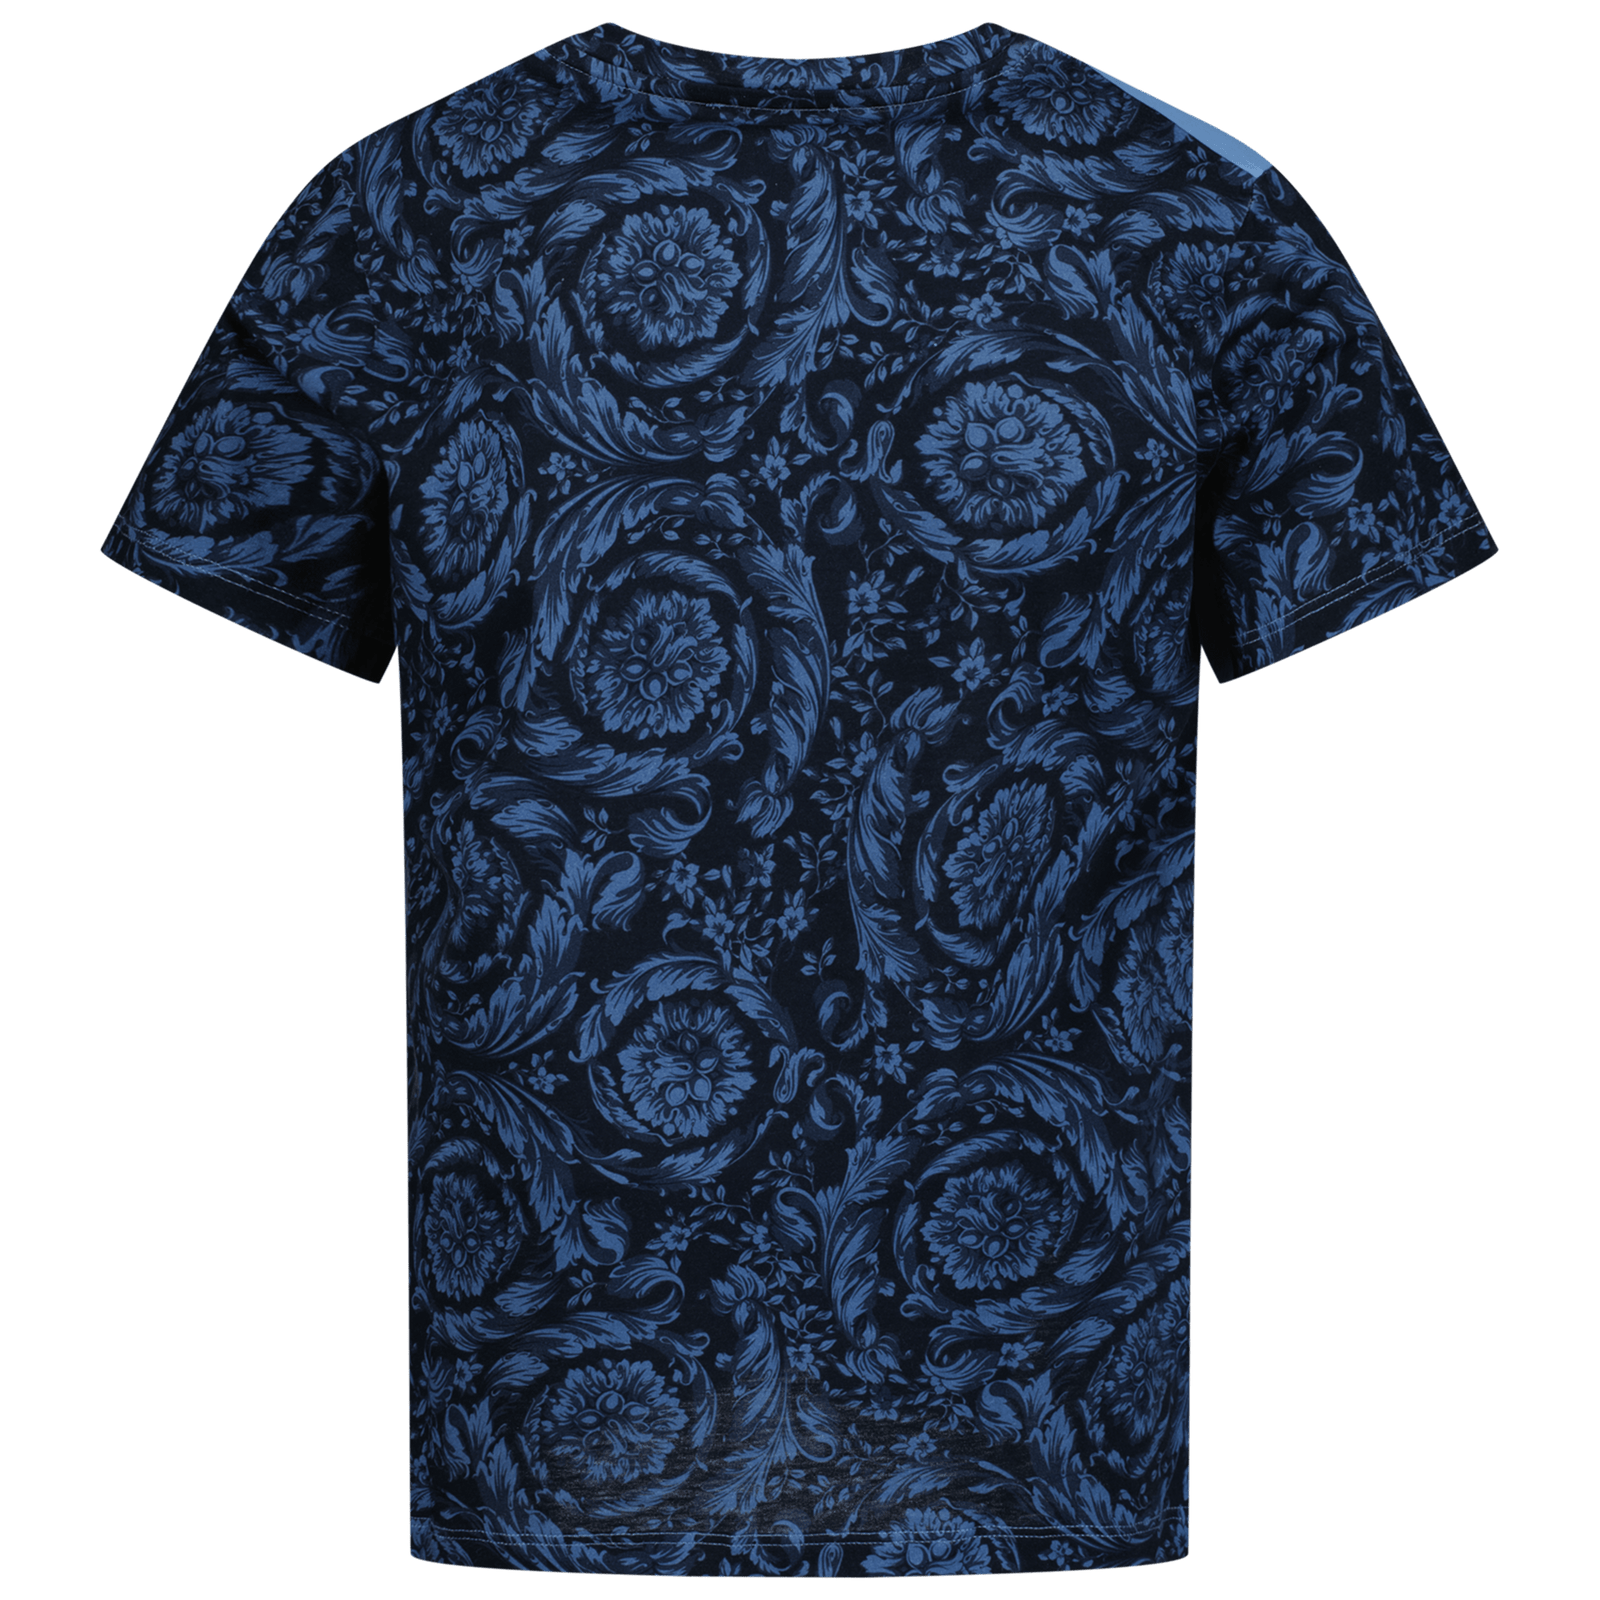 Versace Kinder Jongens T-Shirt Licht Blauw 4Y